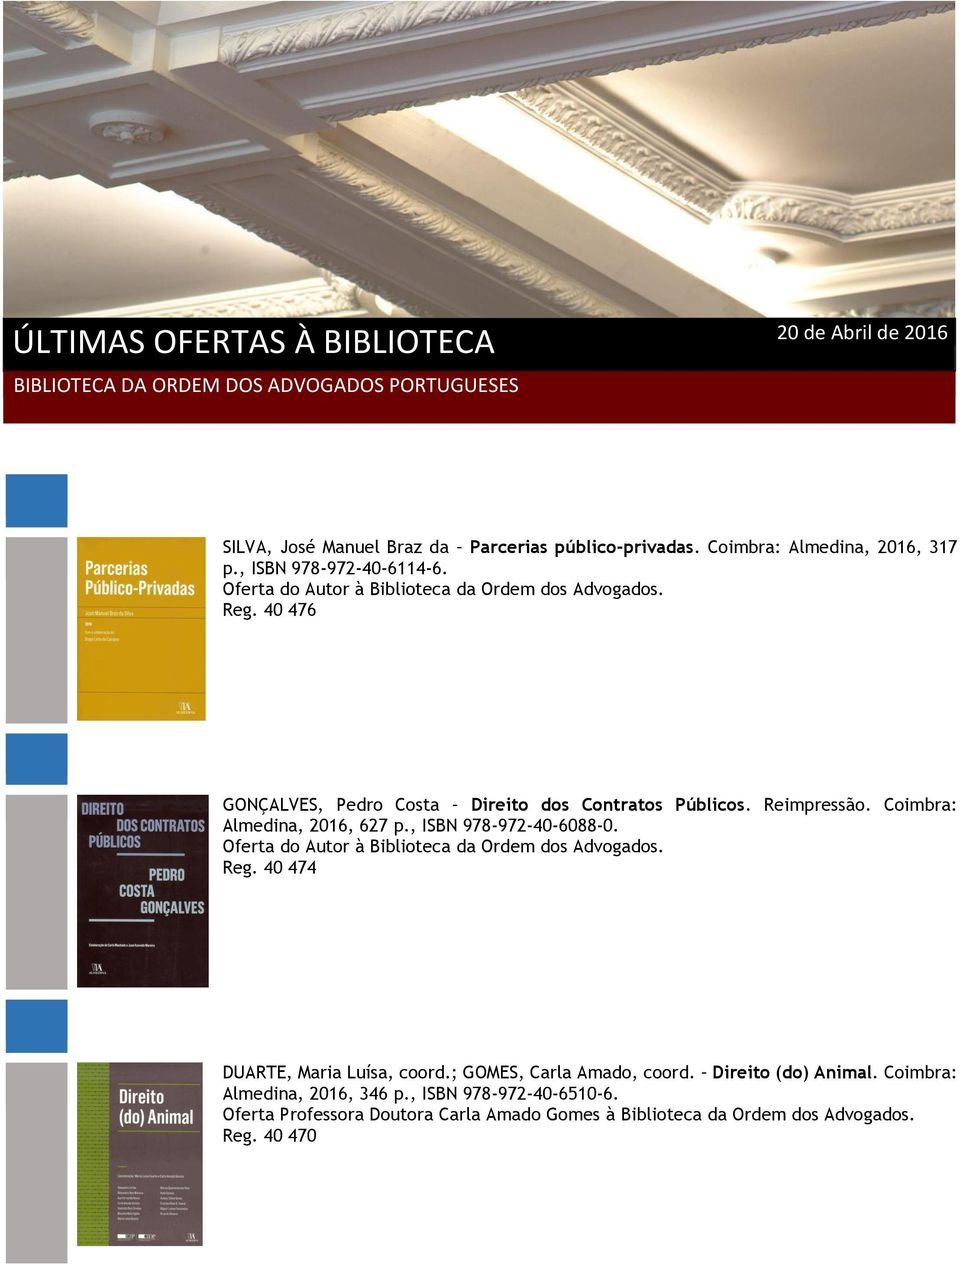 Coimbra: Almedina, 2016, 627 p., ISBN 978-972-40-6088-0. Reg. 40 474 DUARTE, Maria Luísa, coord.; GOMES, Carla Amado, coord.